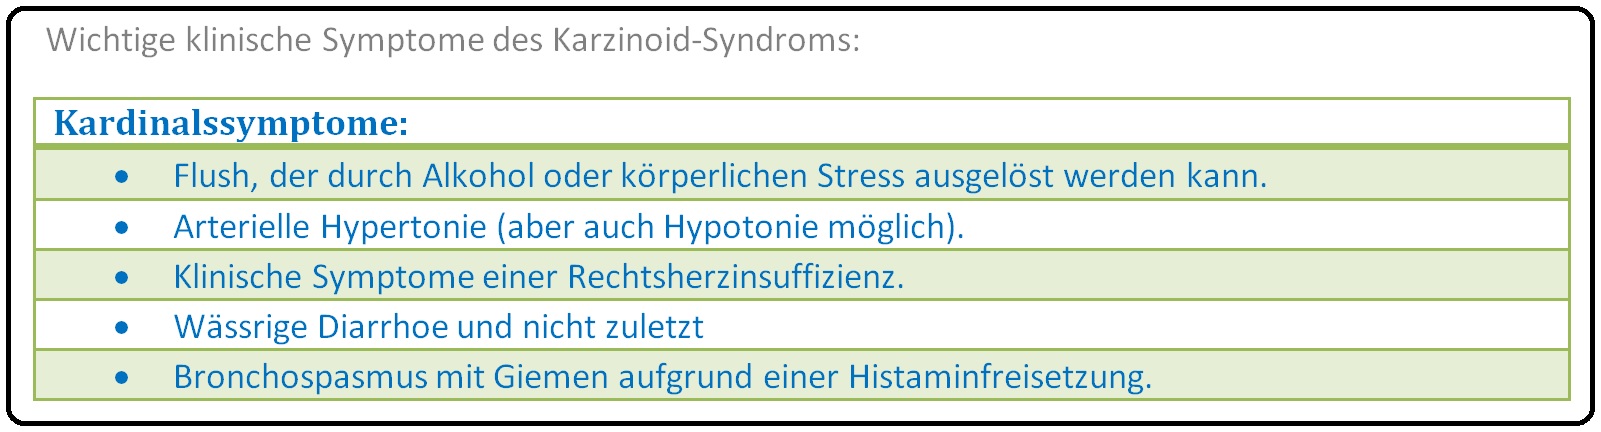 617 Wichtige klinische Symptome des Karzinoid Syndroms